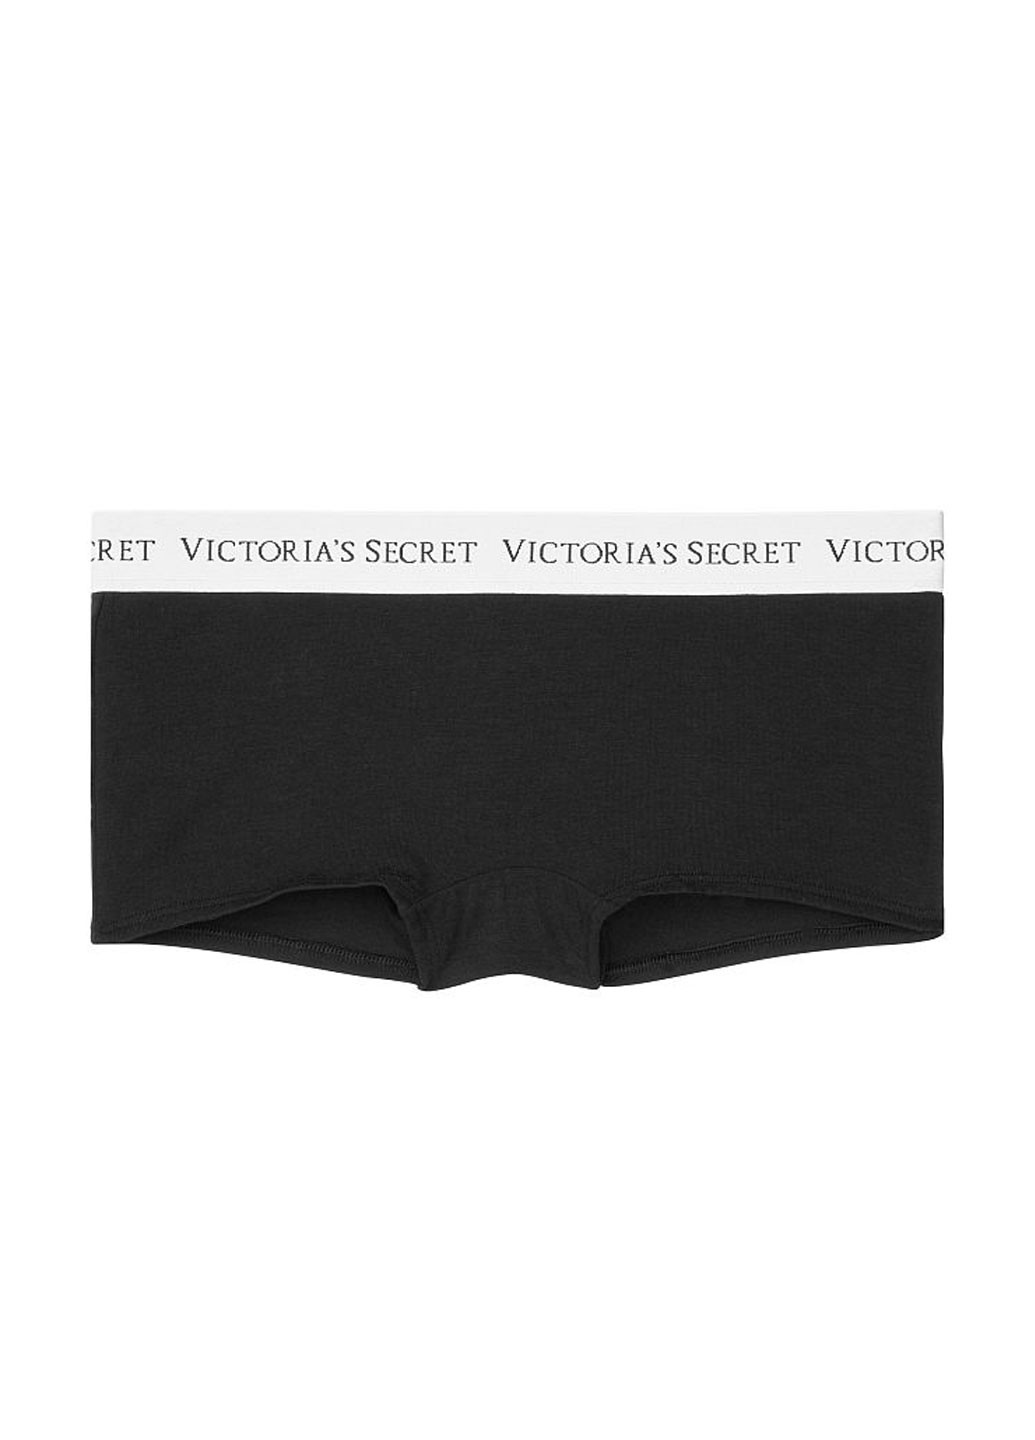 Трусики Victoria's Secret трусики-шорты логотипы чёрные повседневные хлопок